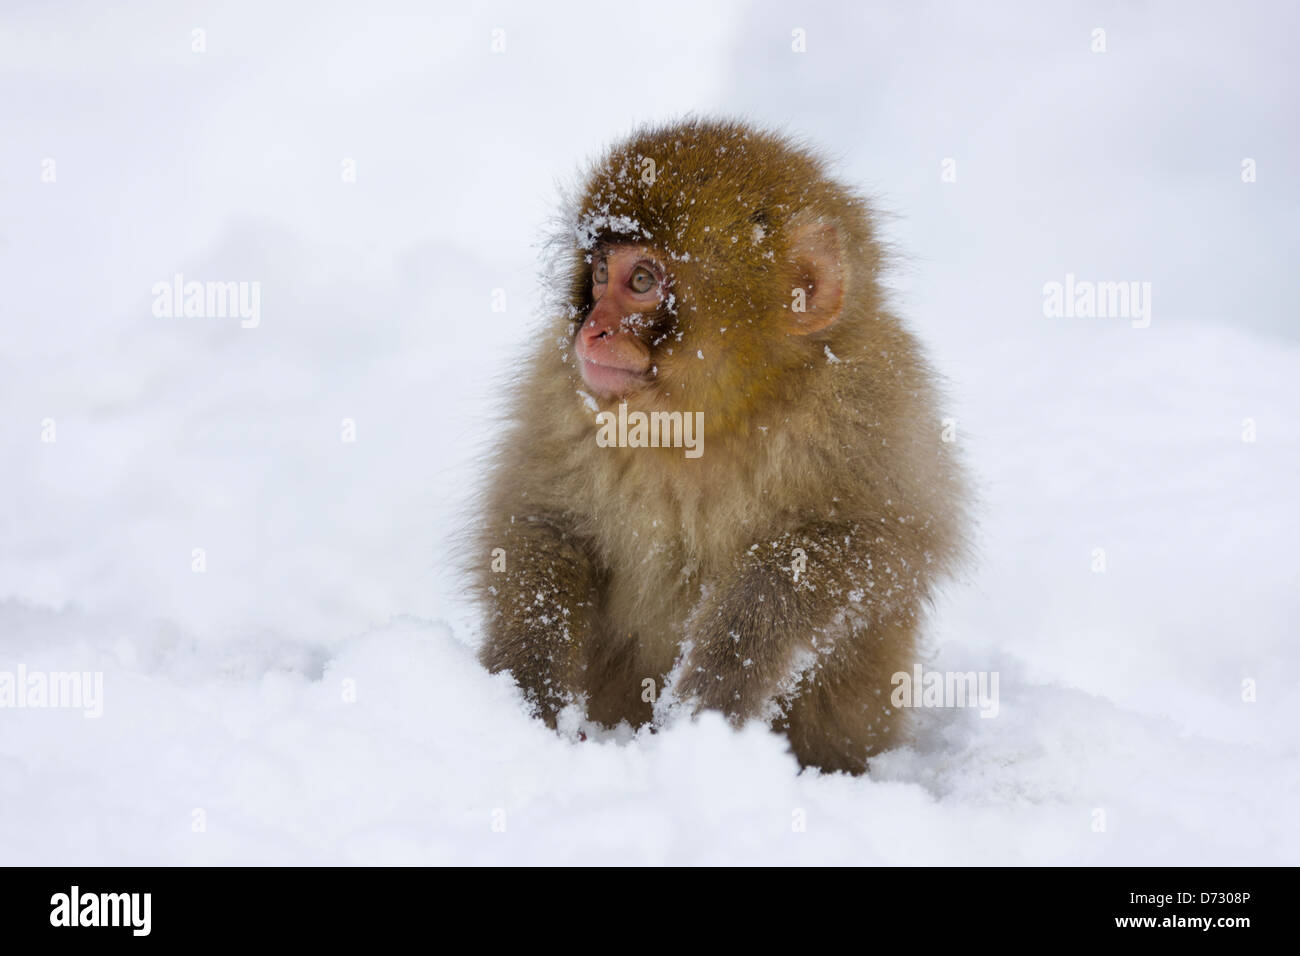 Japanische Snow Monkey Baby auf Schnee, Nagano, Japan Stockfoto